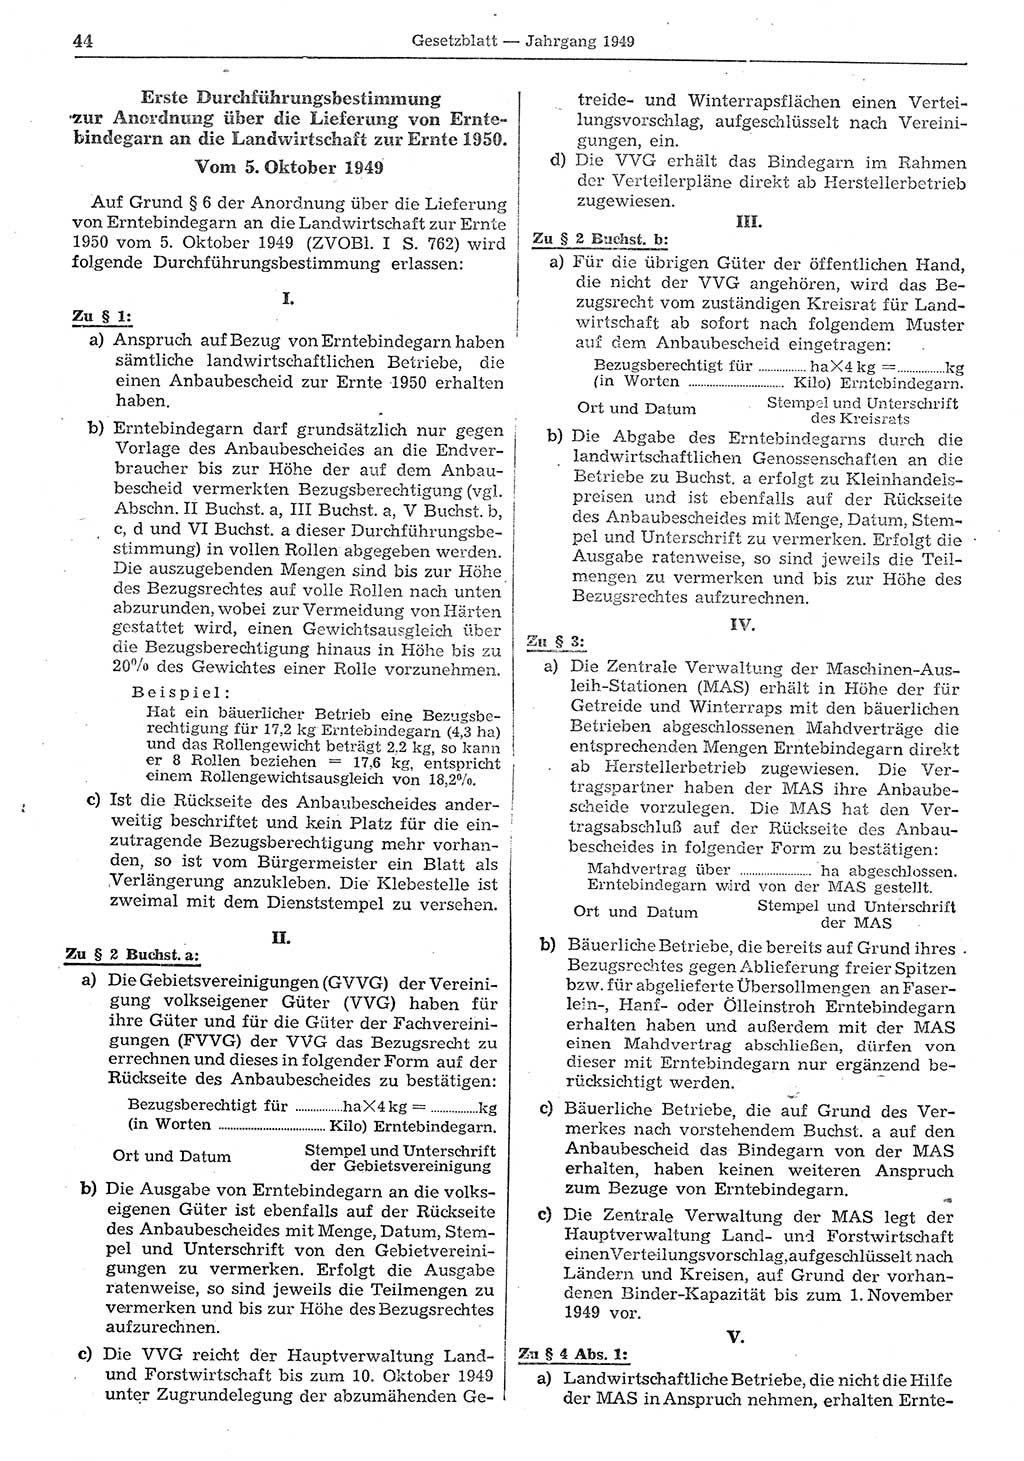 Gesetzblatt (GBl.) der Deutschen Demokratischen Republik (DDR) 1949, Seite 44 (GBl. DDR 1949, S. 44)